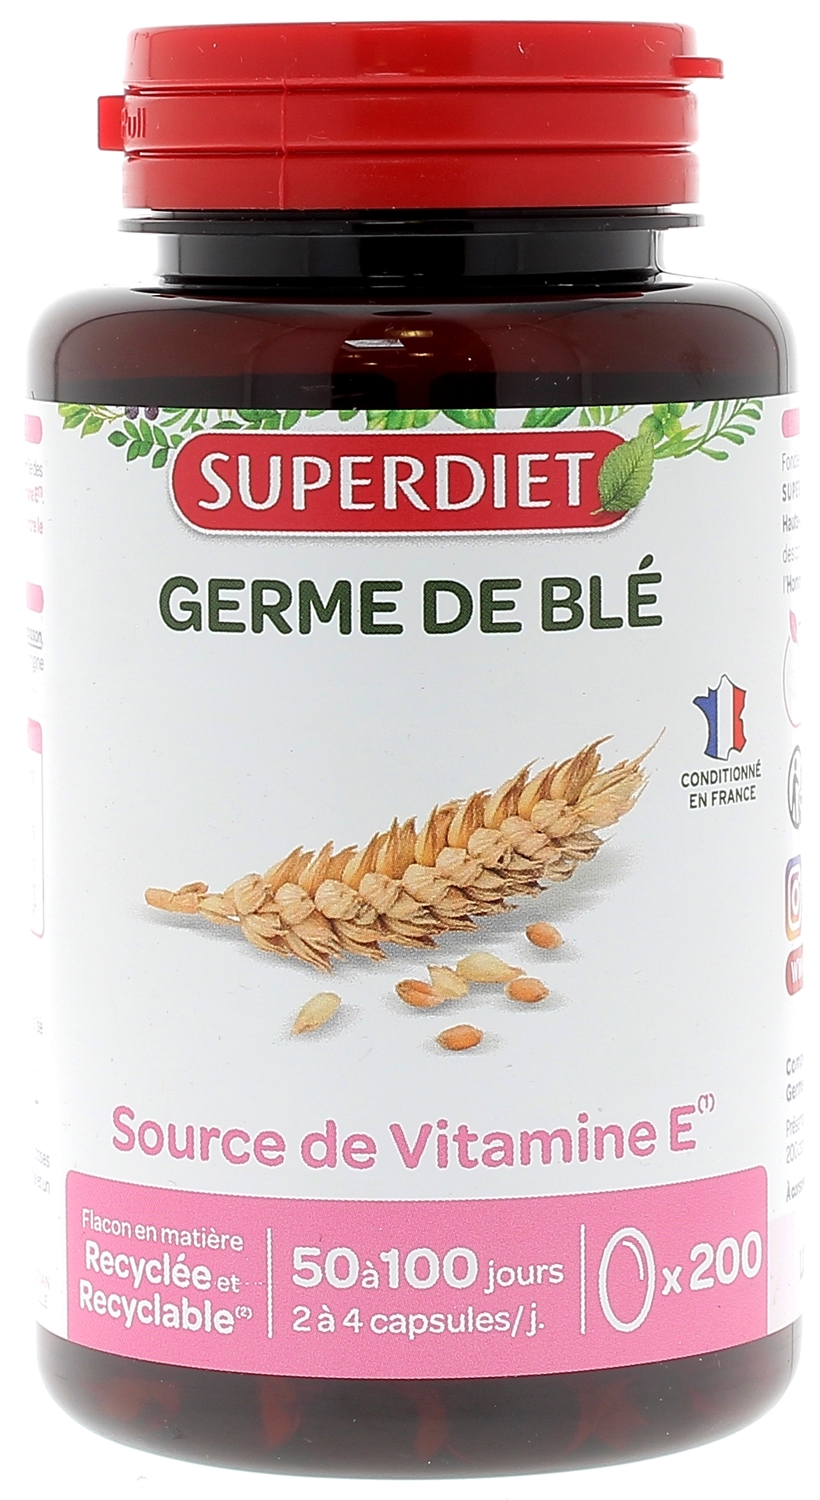 Germe de blé Super Diet - complément alimentaire source de vitamine E